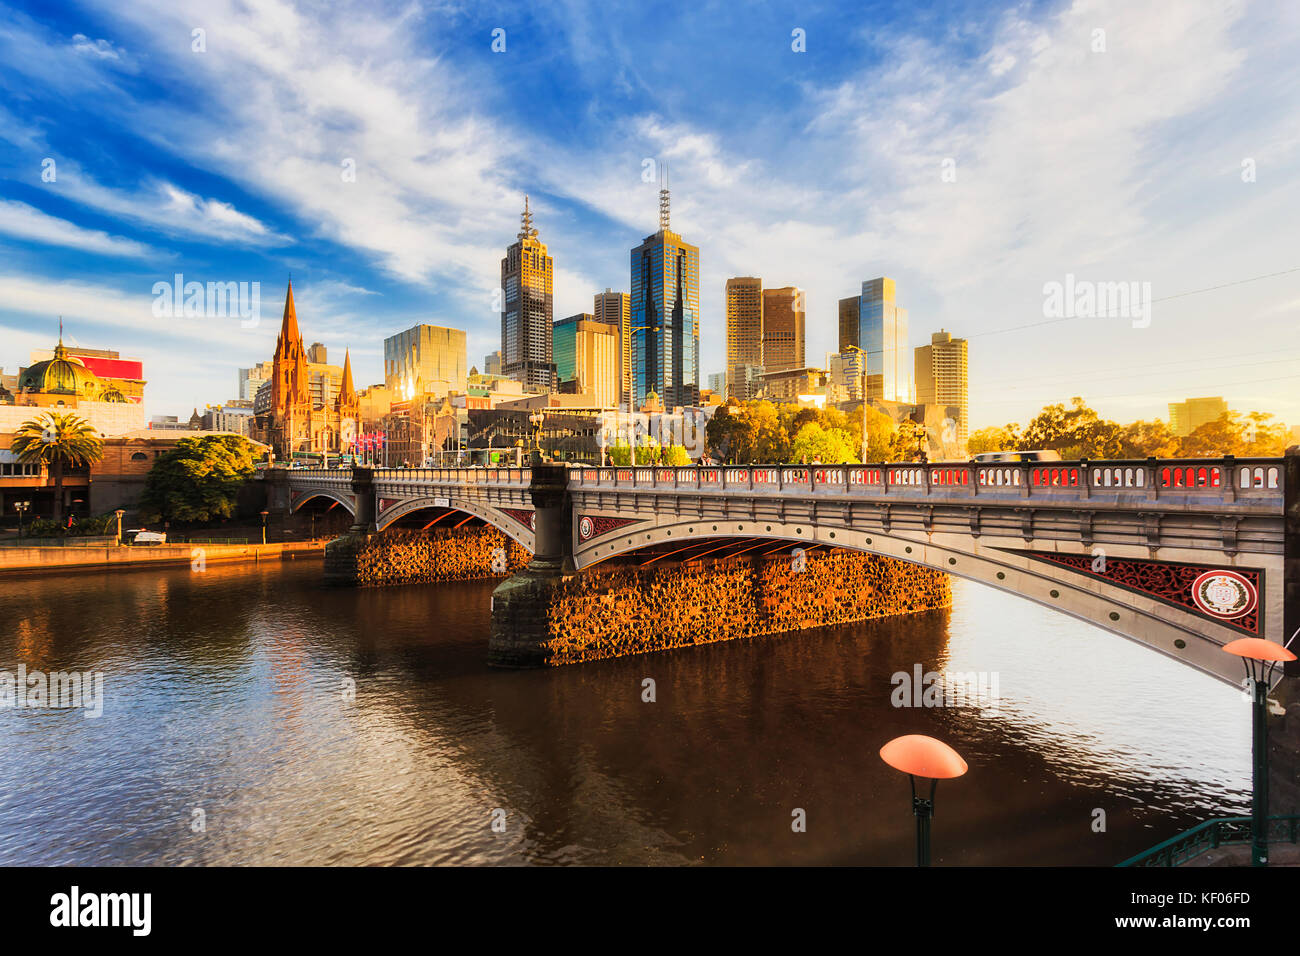 Calda luce del sole accende città di Melbourne su princes bridge st Kilda Road sun alba sulle acque del fiume Yarra. Foto Stock